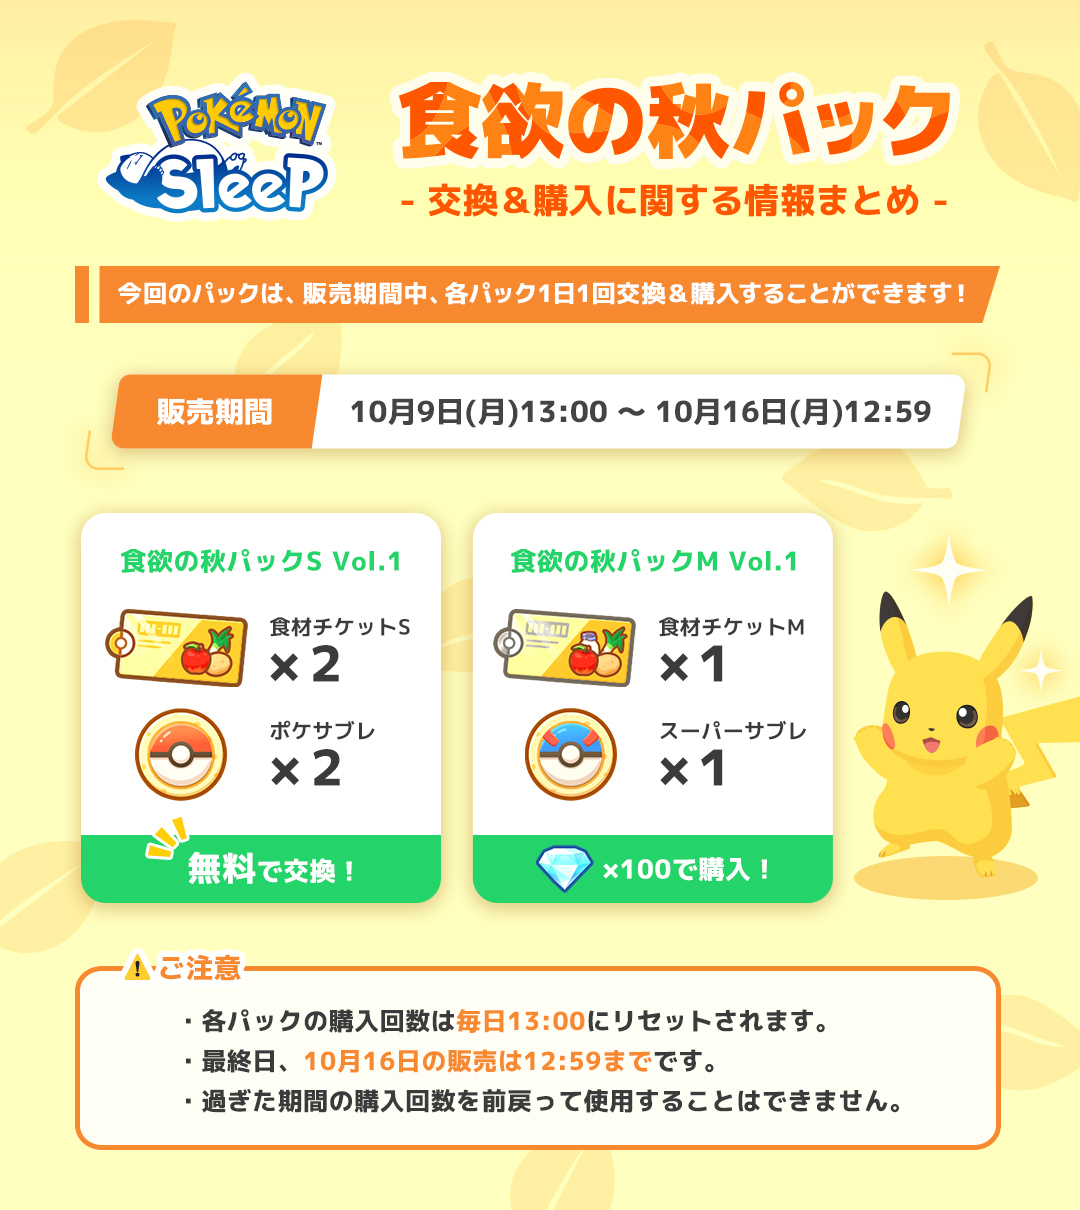 New Arrivals: Onix and Steelix – Pokémon Sleep Official Webpage